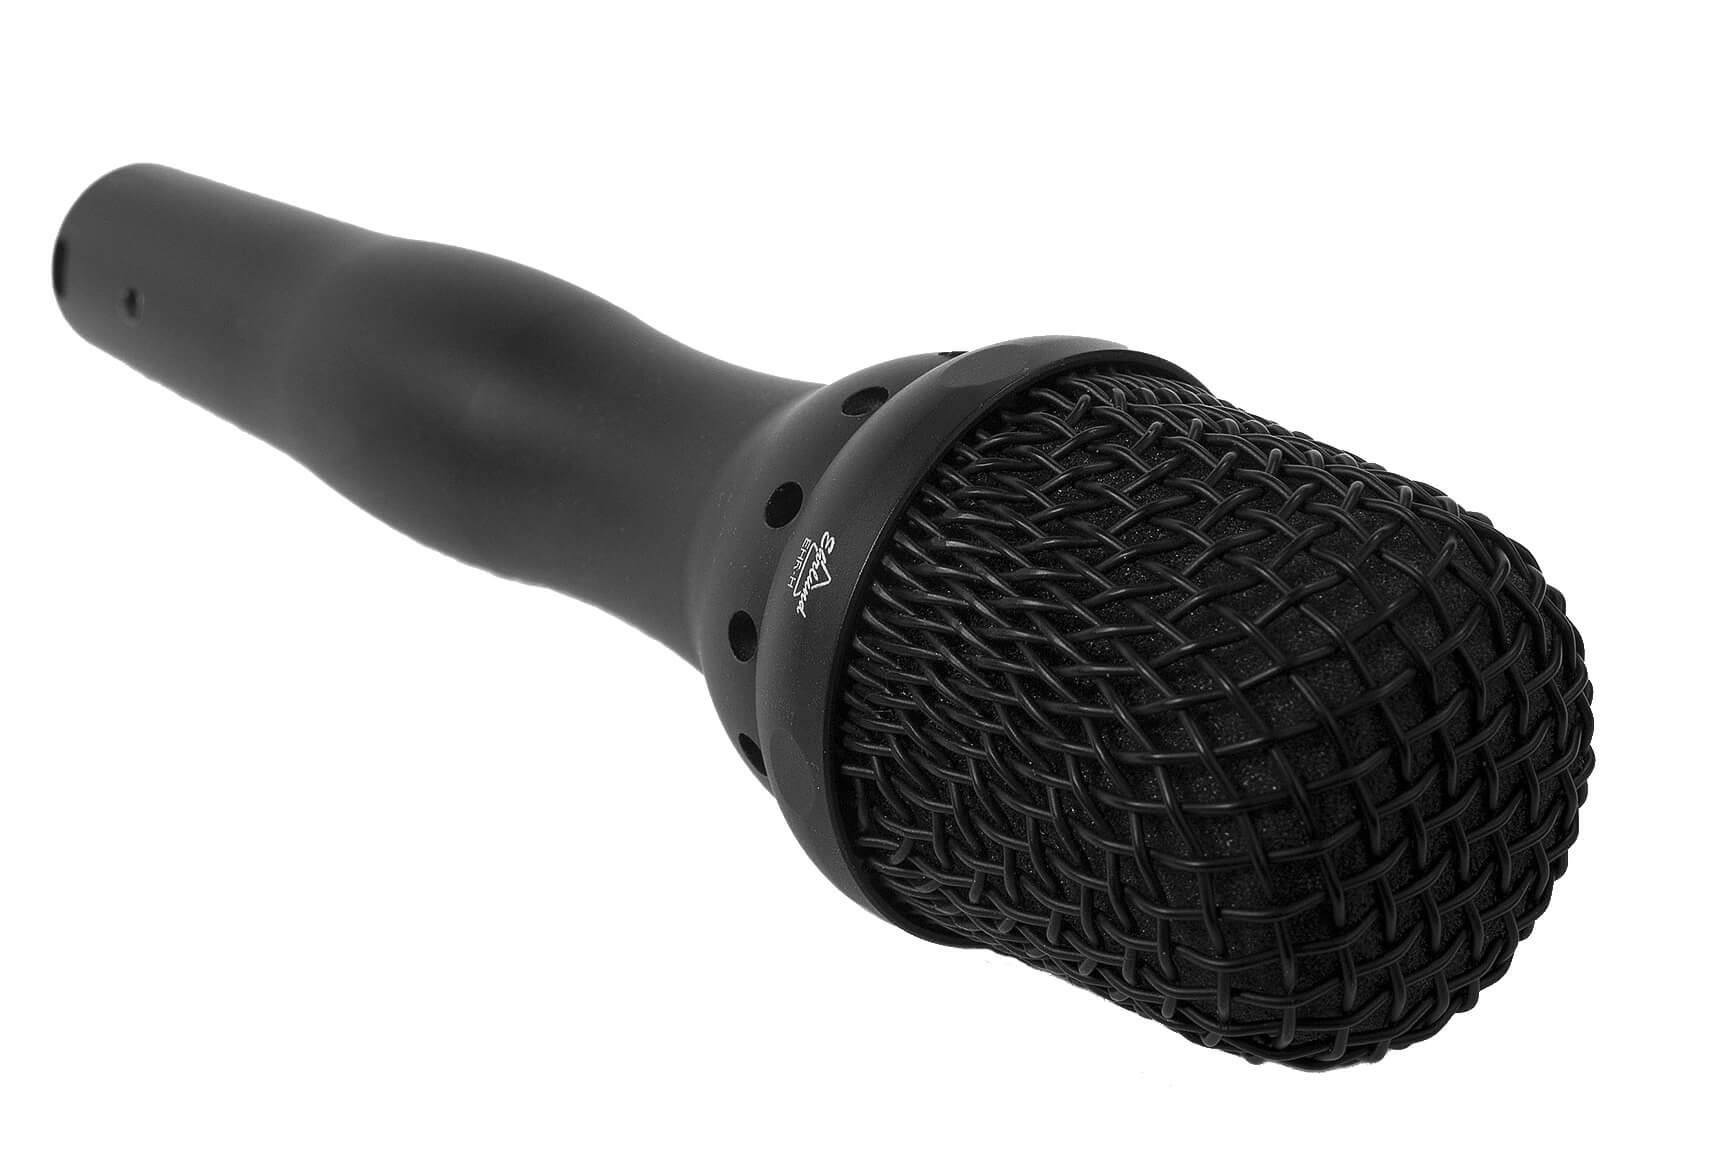 Ehrlund EHR-H Microphone Review